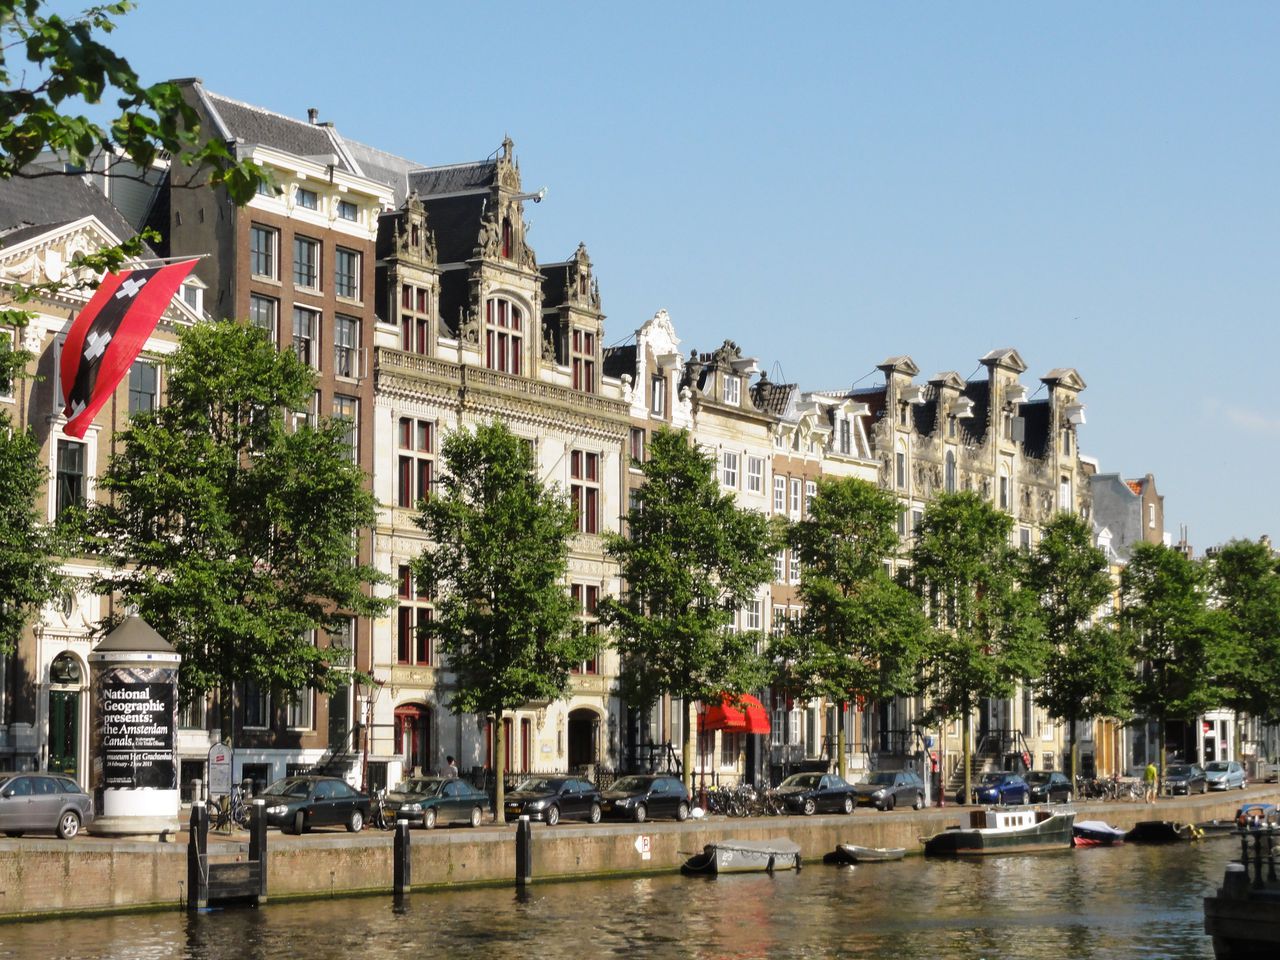 De Gouden Bocht in Amsterdam was ook een Groene Bocht 